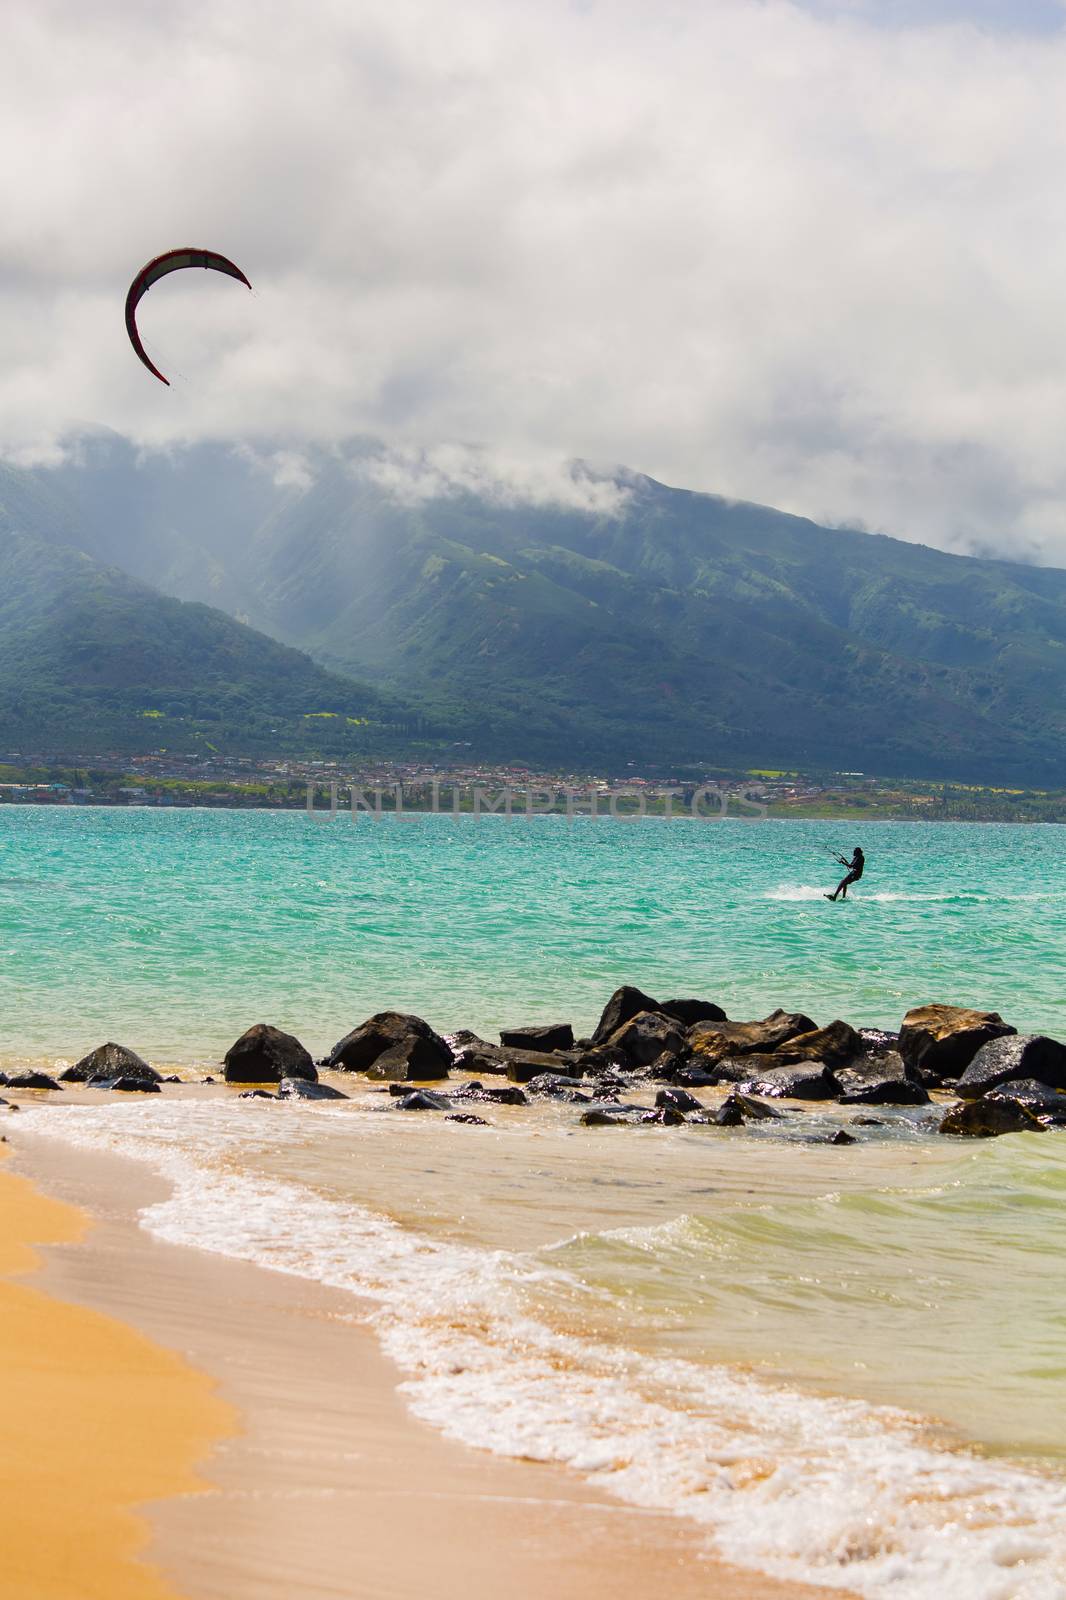 Maui kite surfer on shore at Kanaha Beach Park